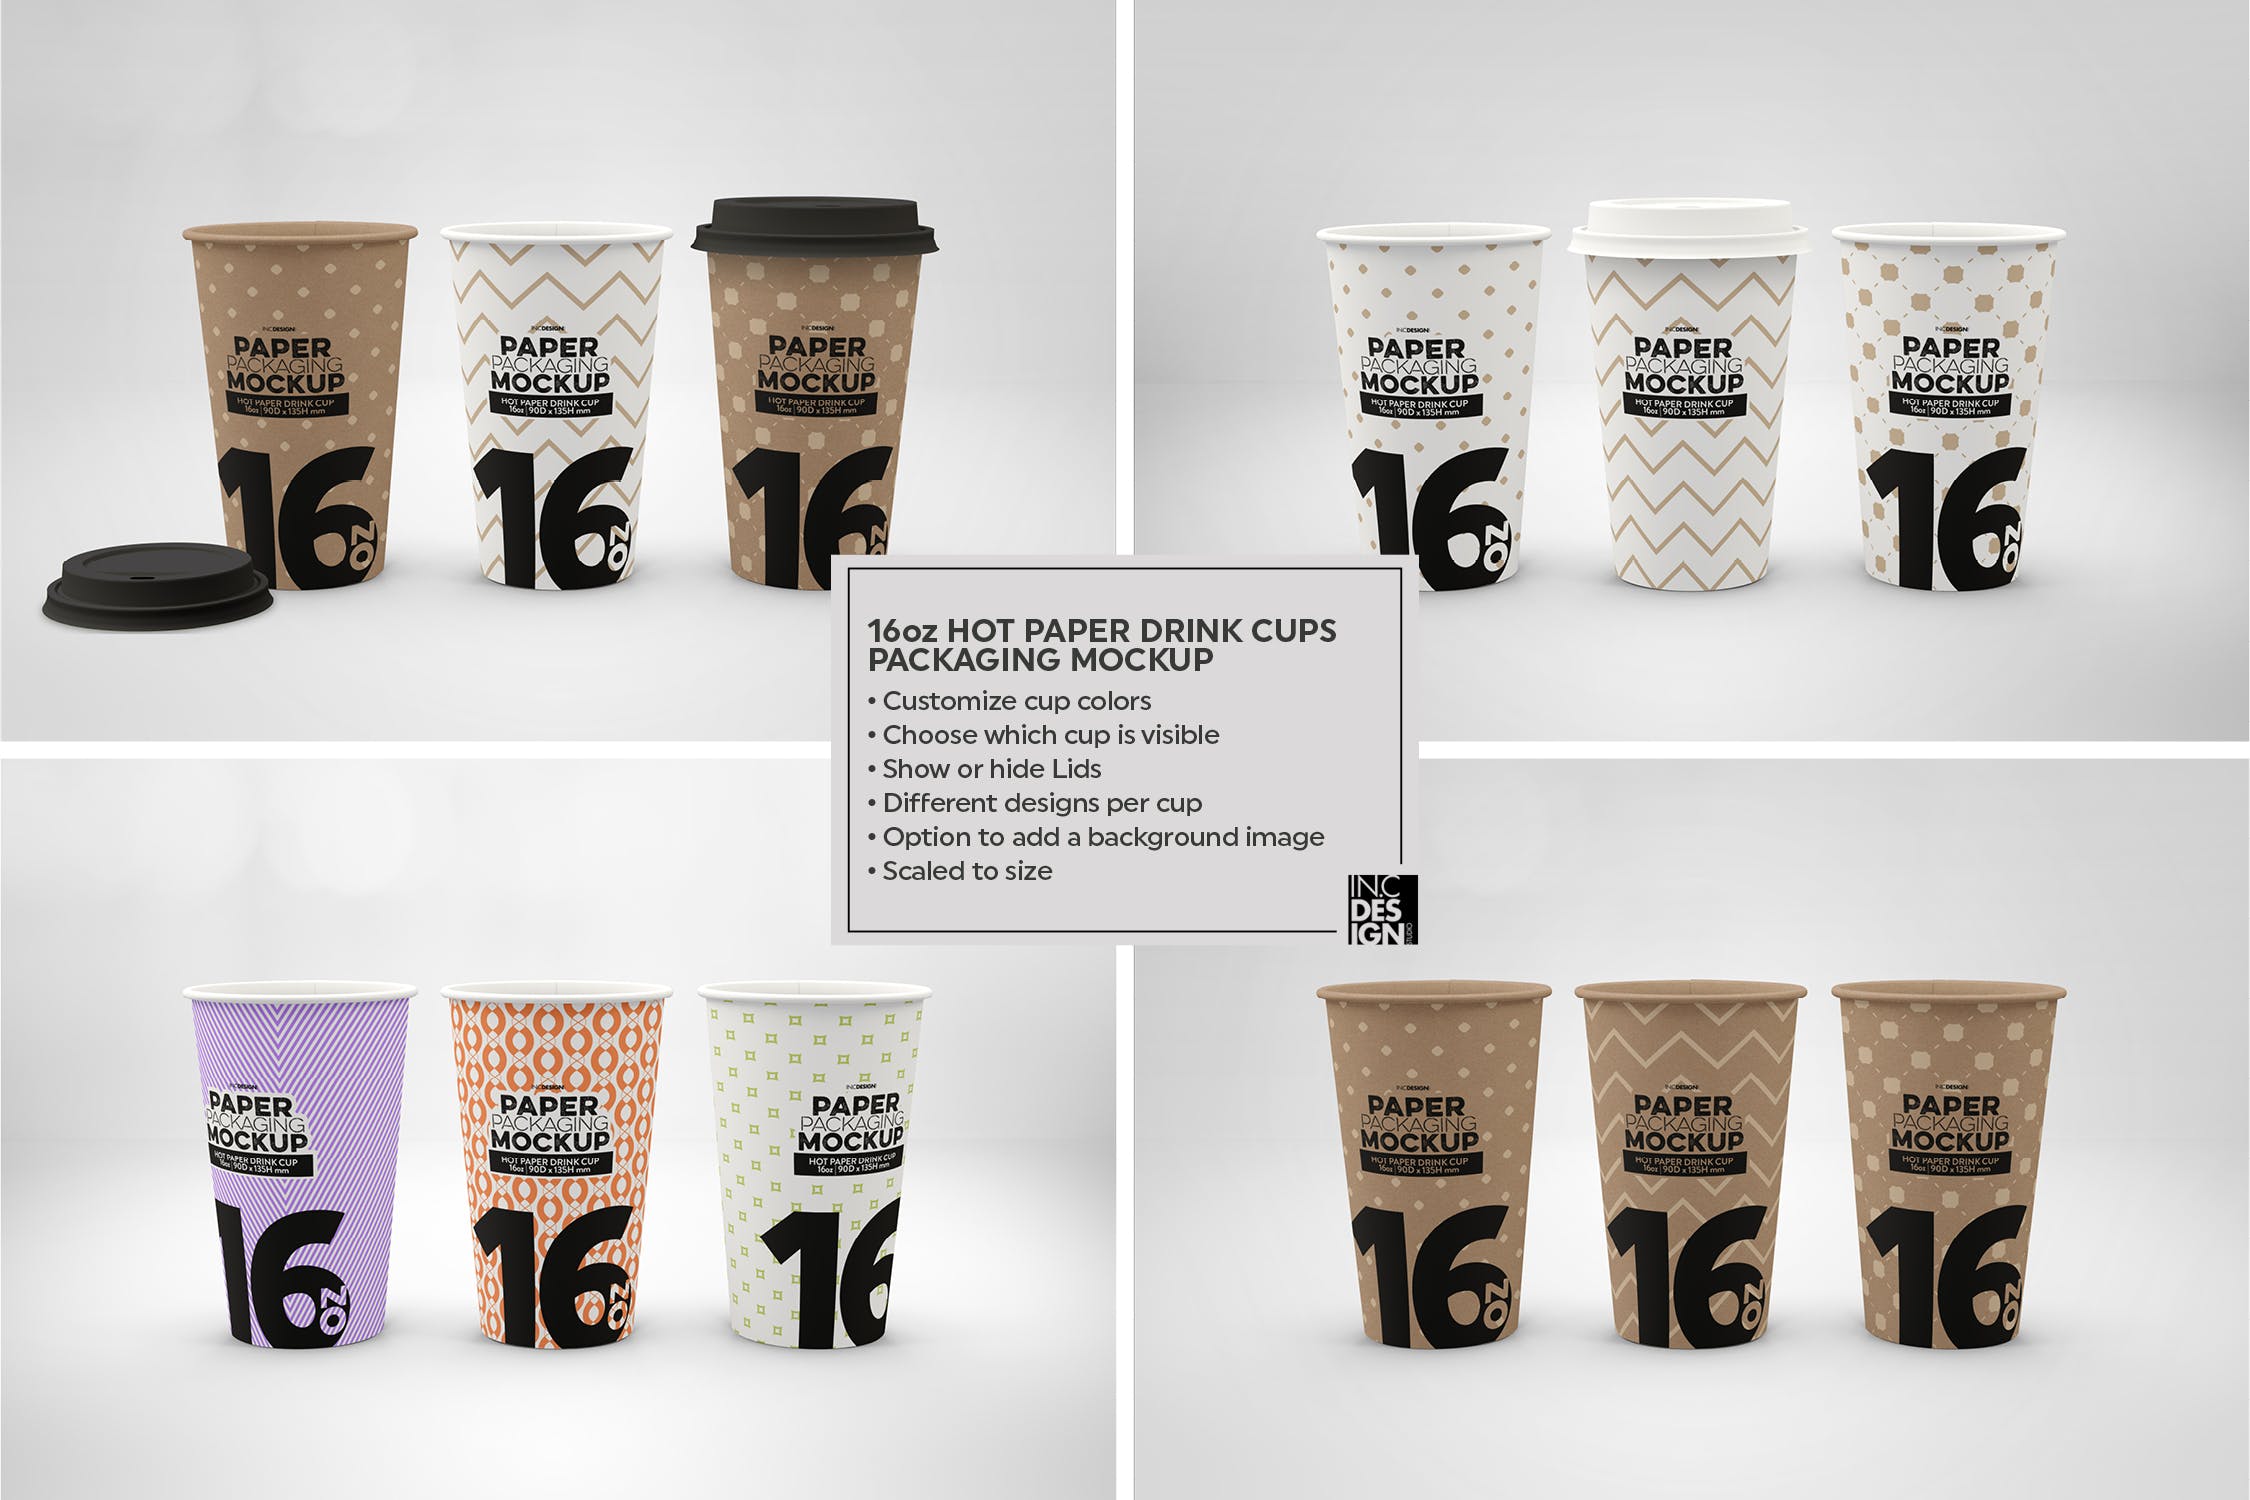 热饮一次性纸杯外观设计蚂蚁素材精选 Paper Hot Drink Cups Packaging Mockup插图(9)